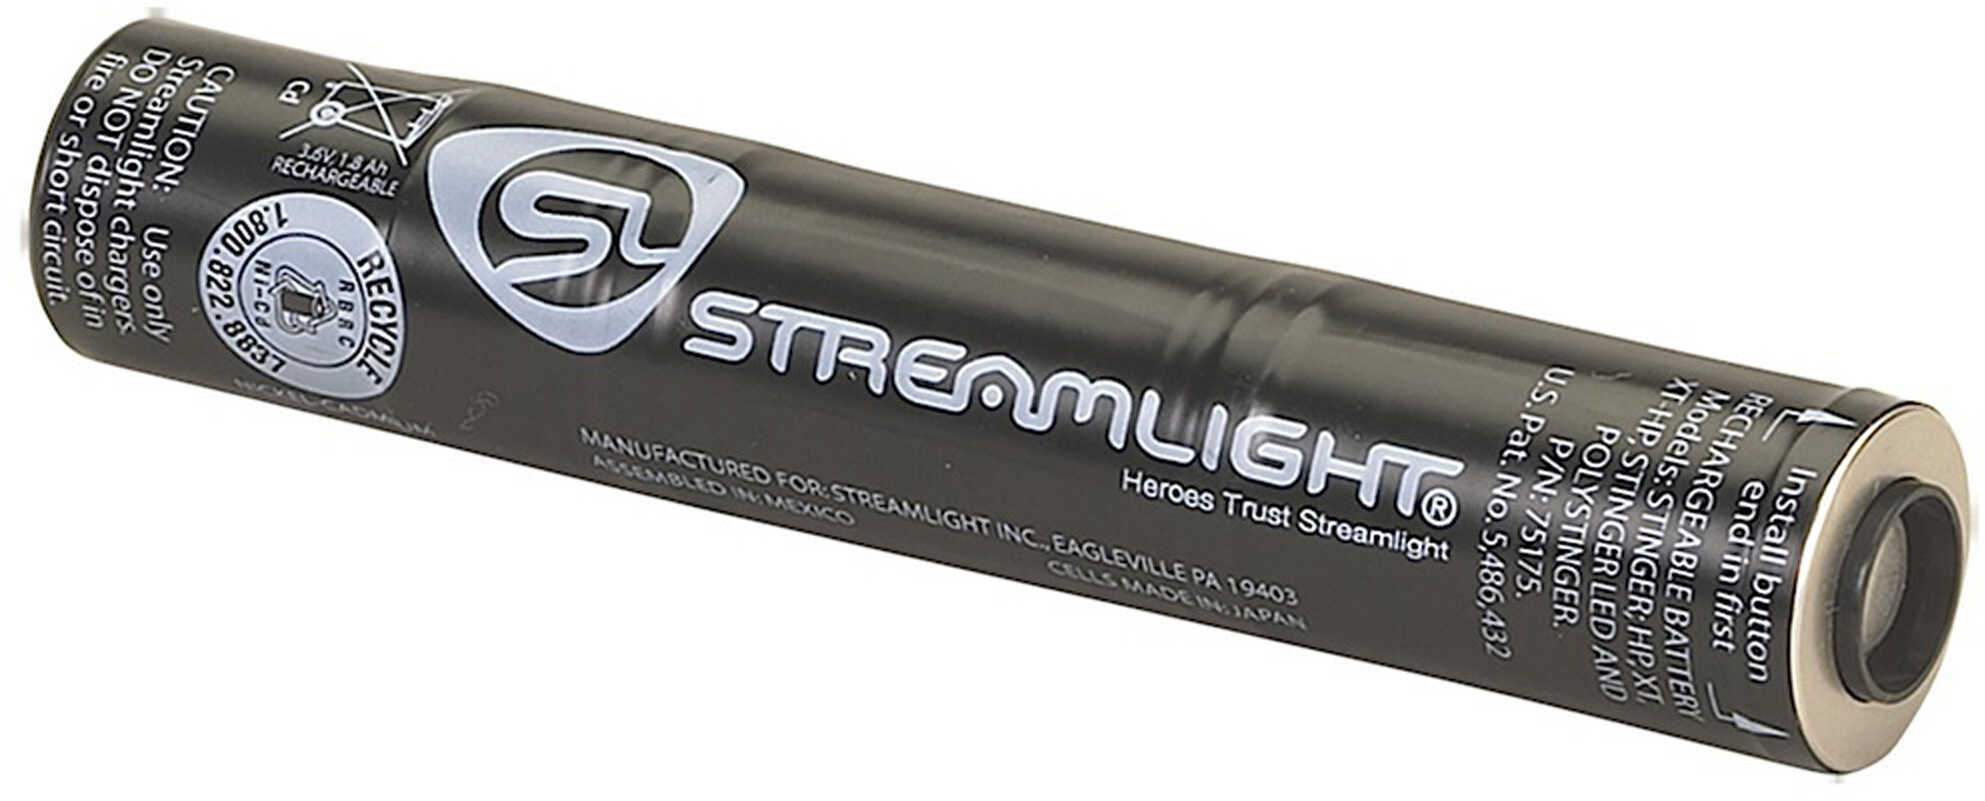 Streamlight Lithium Stinger Battery Md: 75176